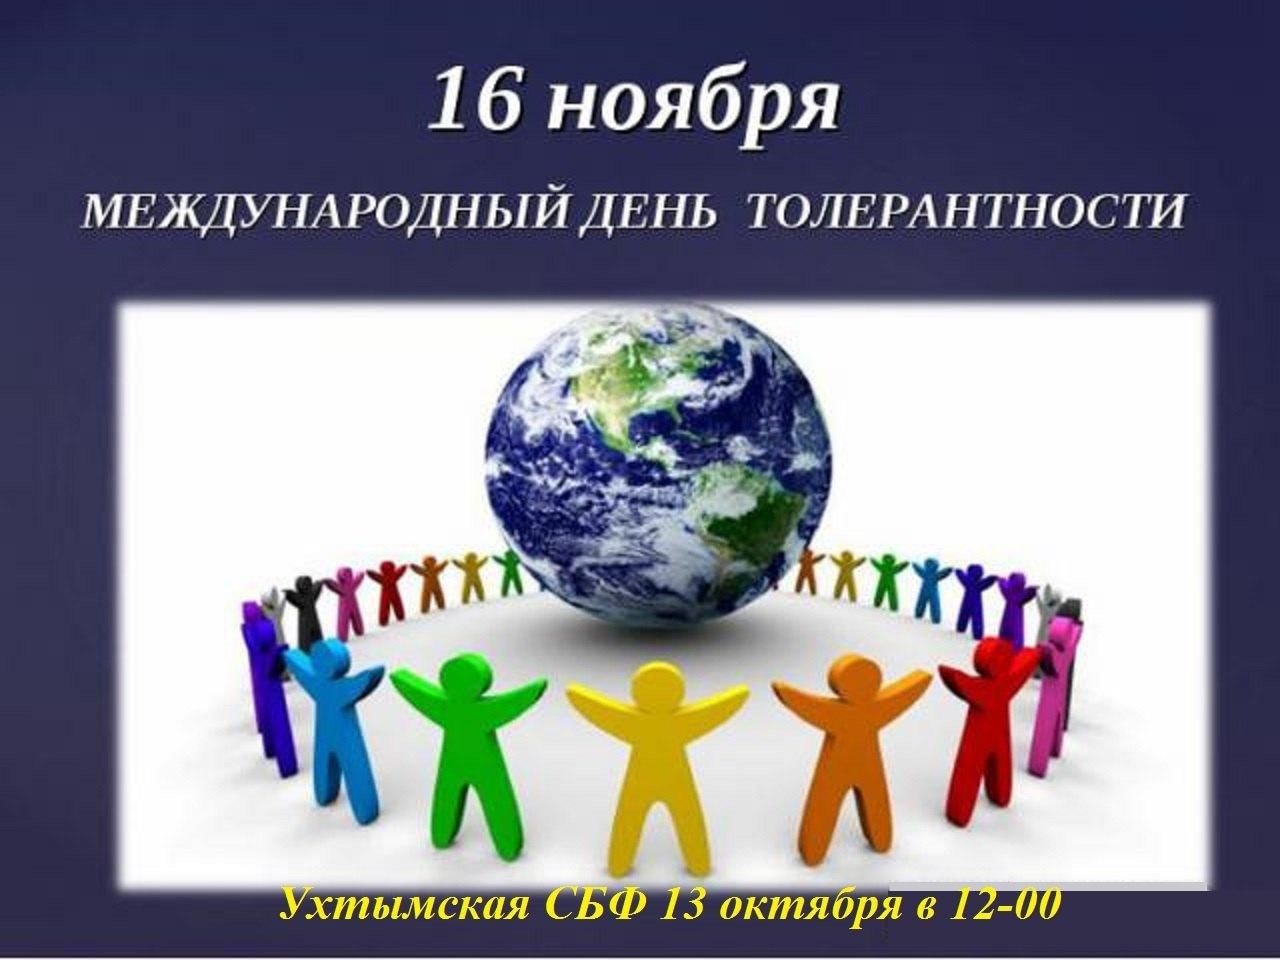 Международный день толерантности (терпимости)